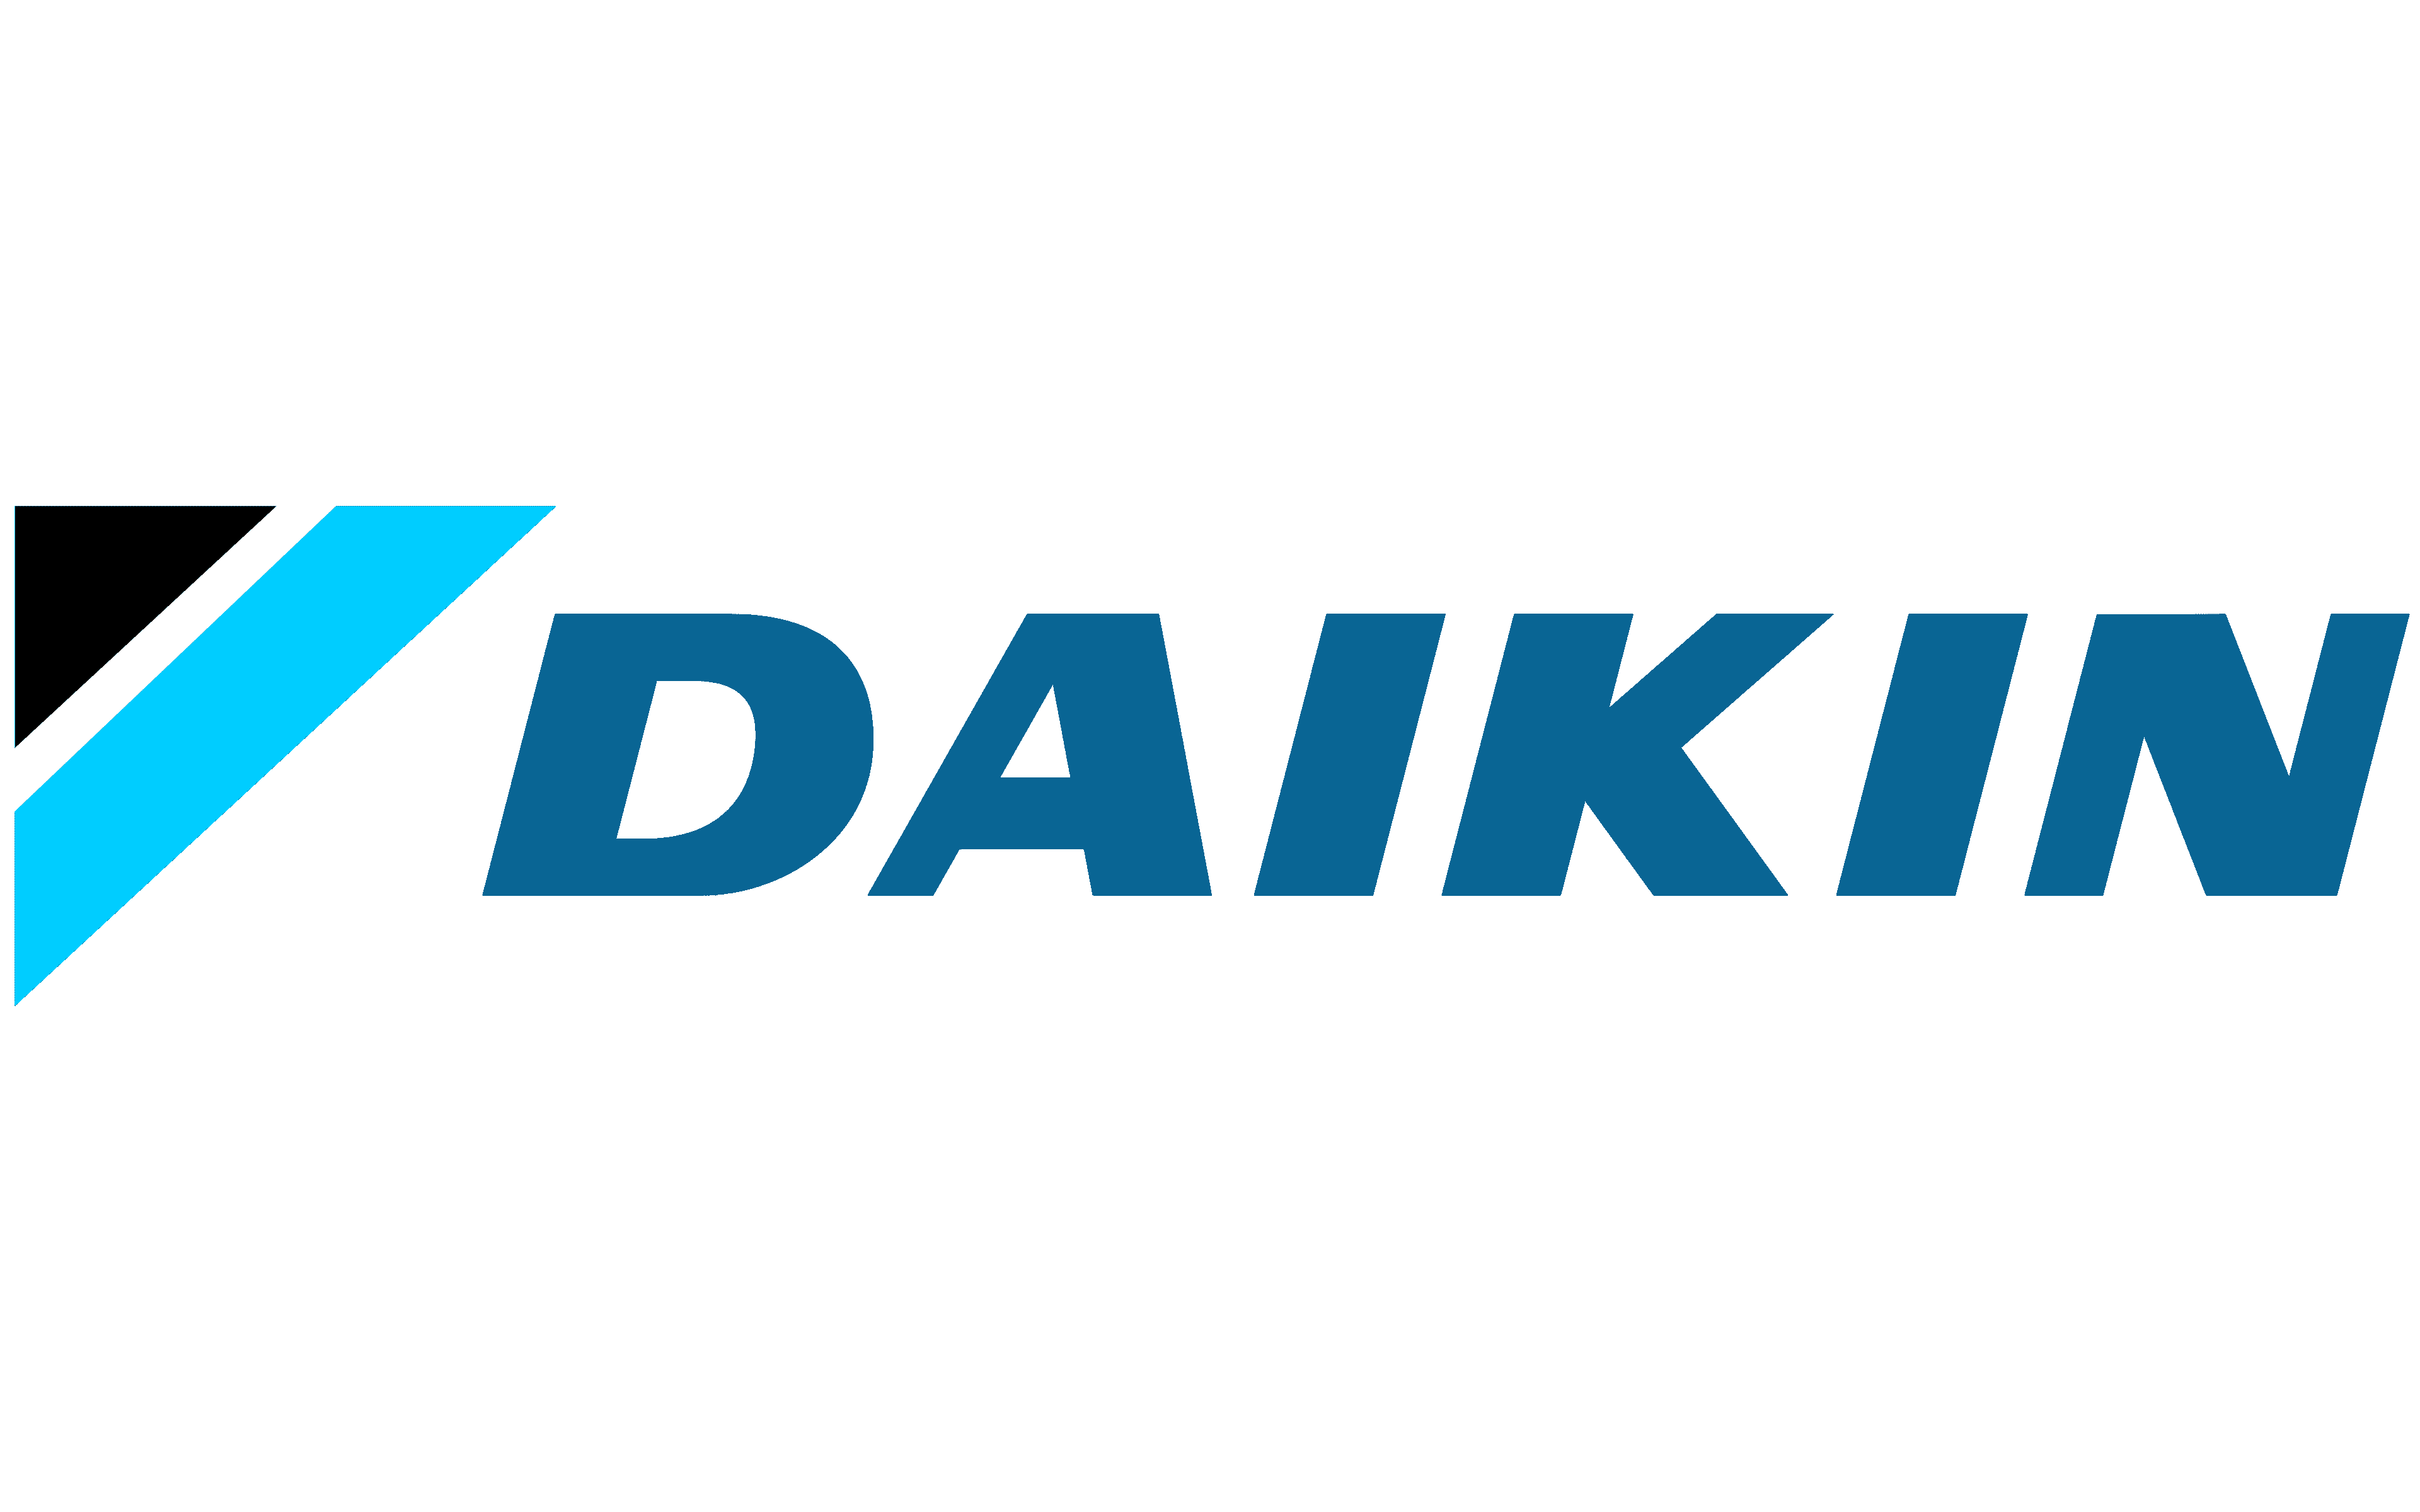 Daikin-Logo-1953